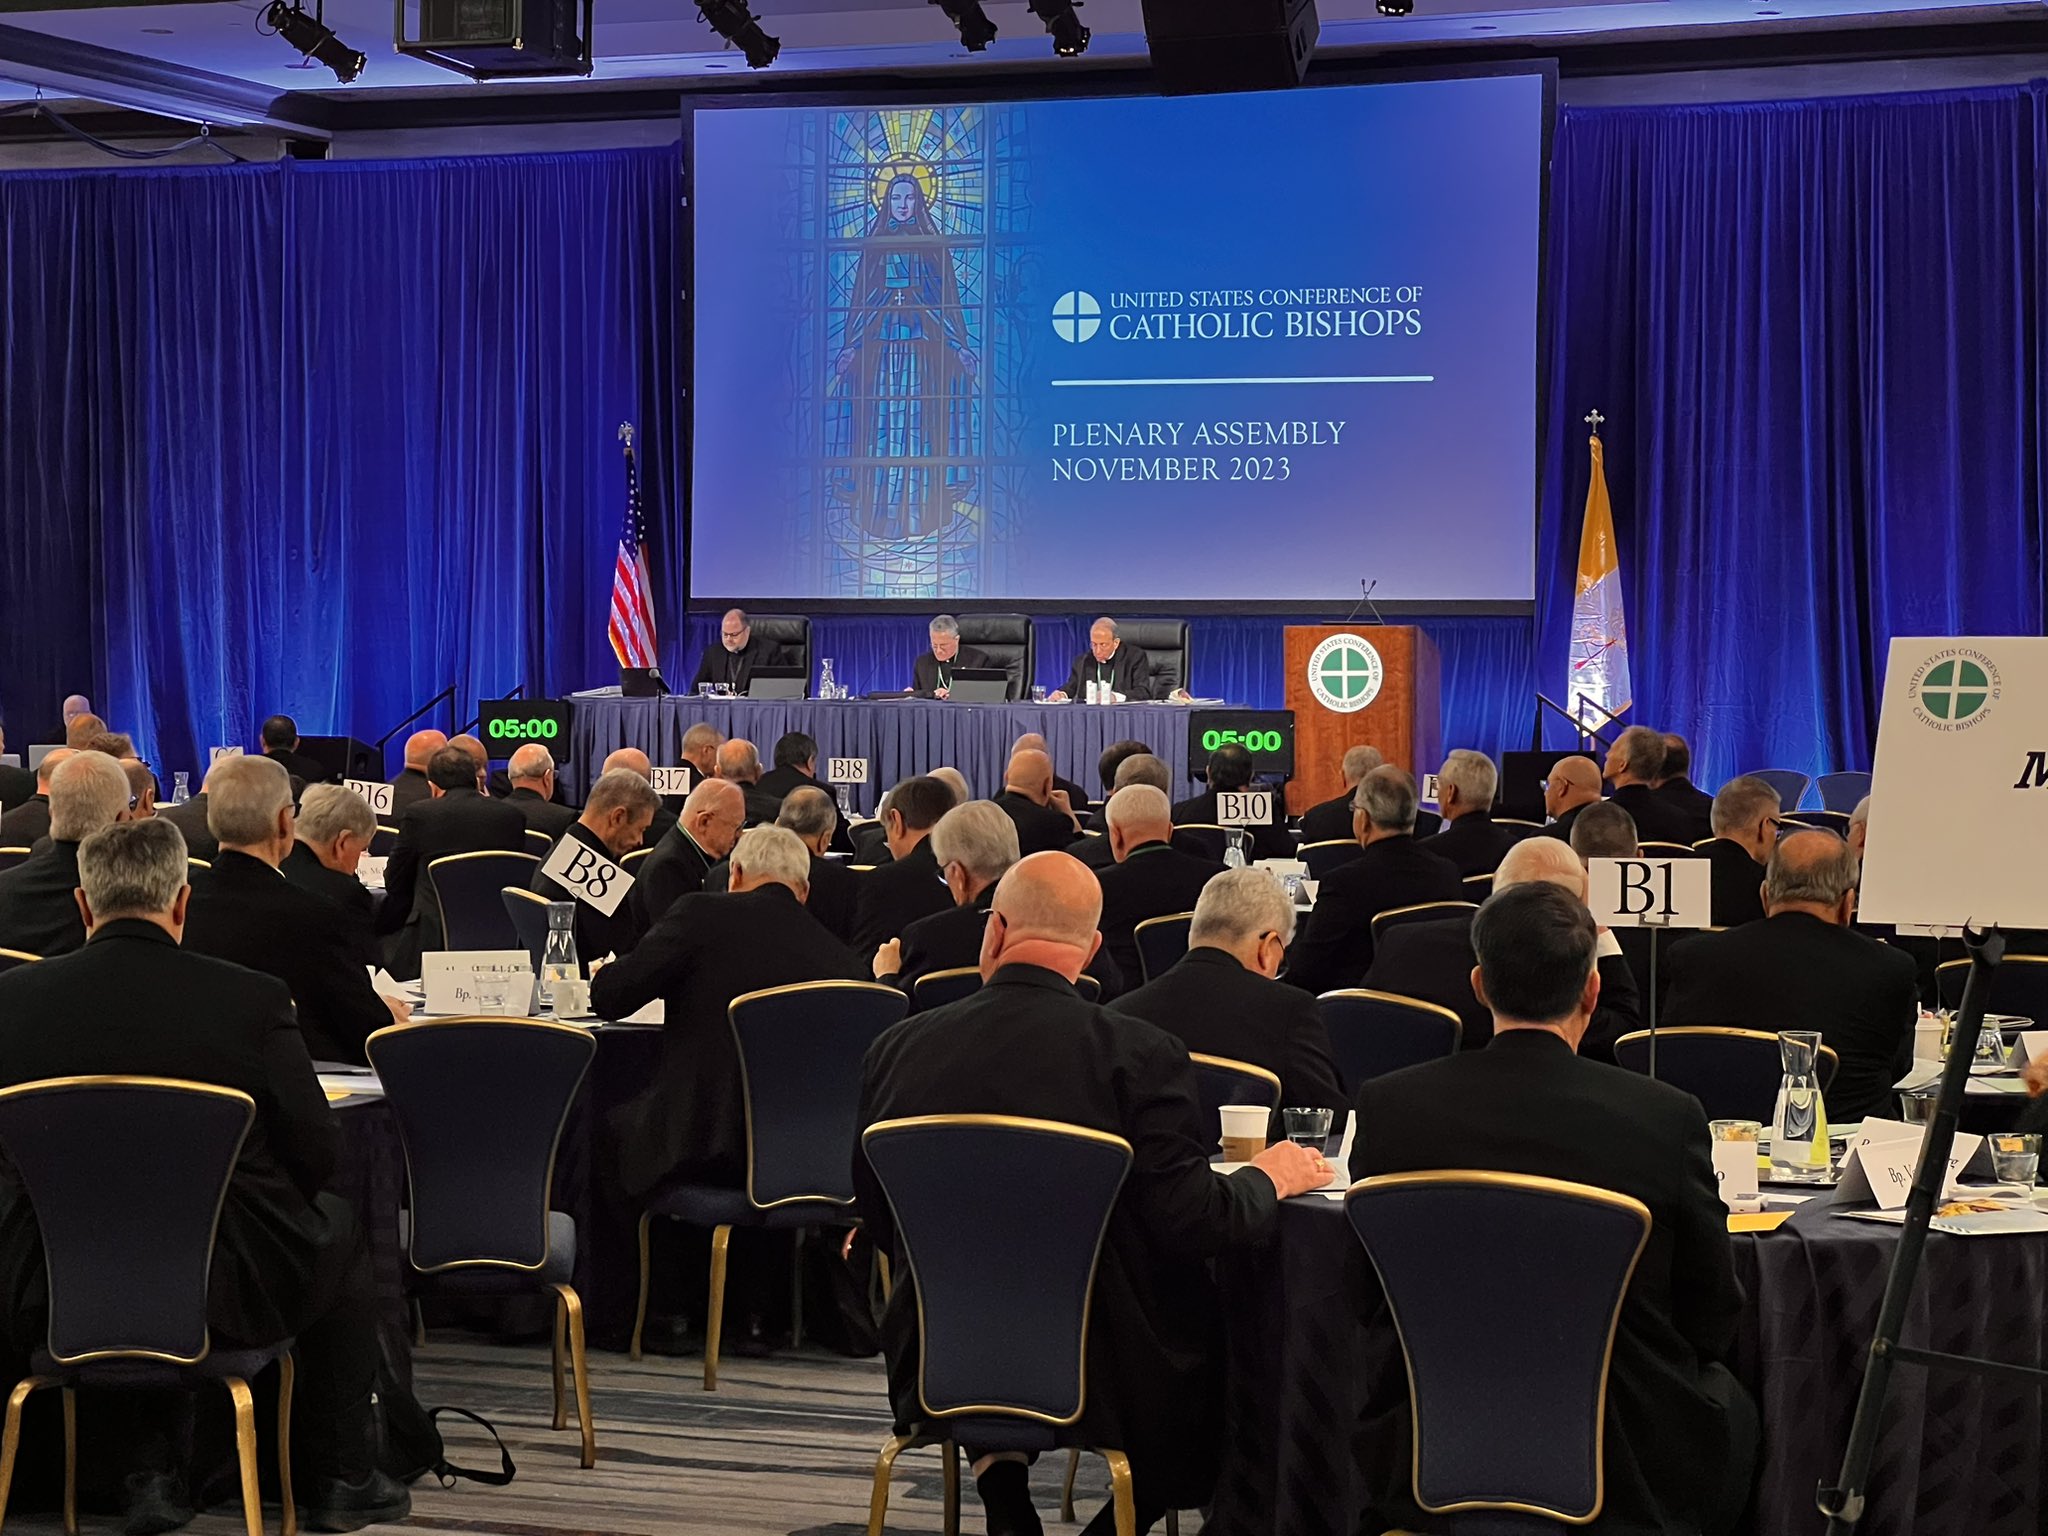 États-Unis: premier jour de session de l’assemblée générale des évêques